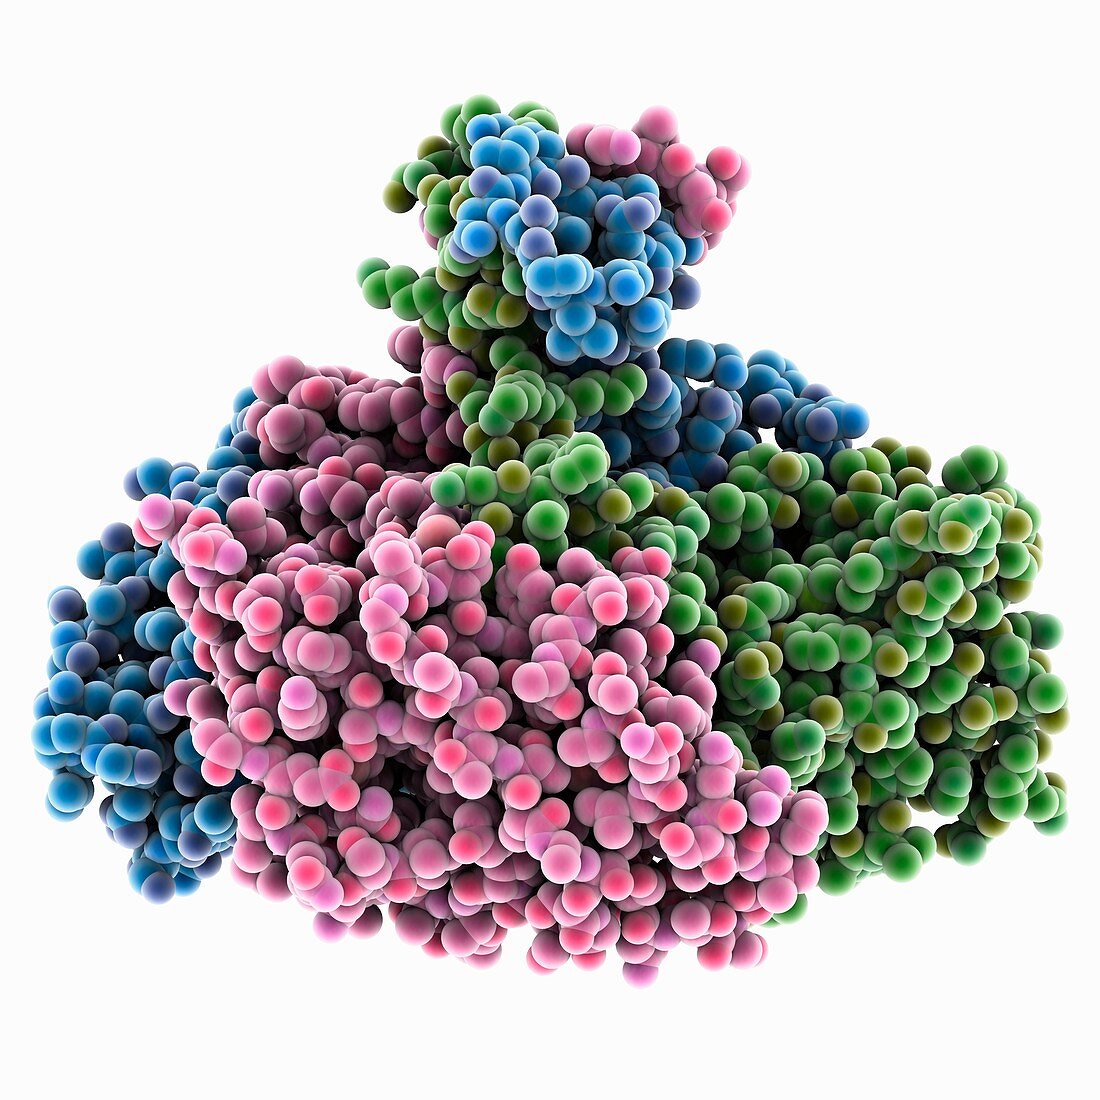 Banna virus outer coat protein, molecular model